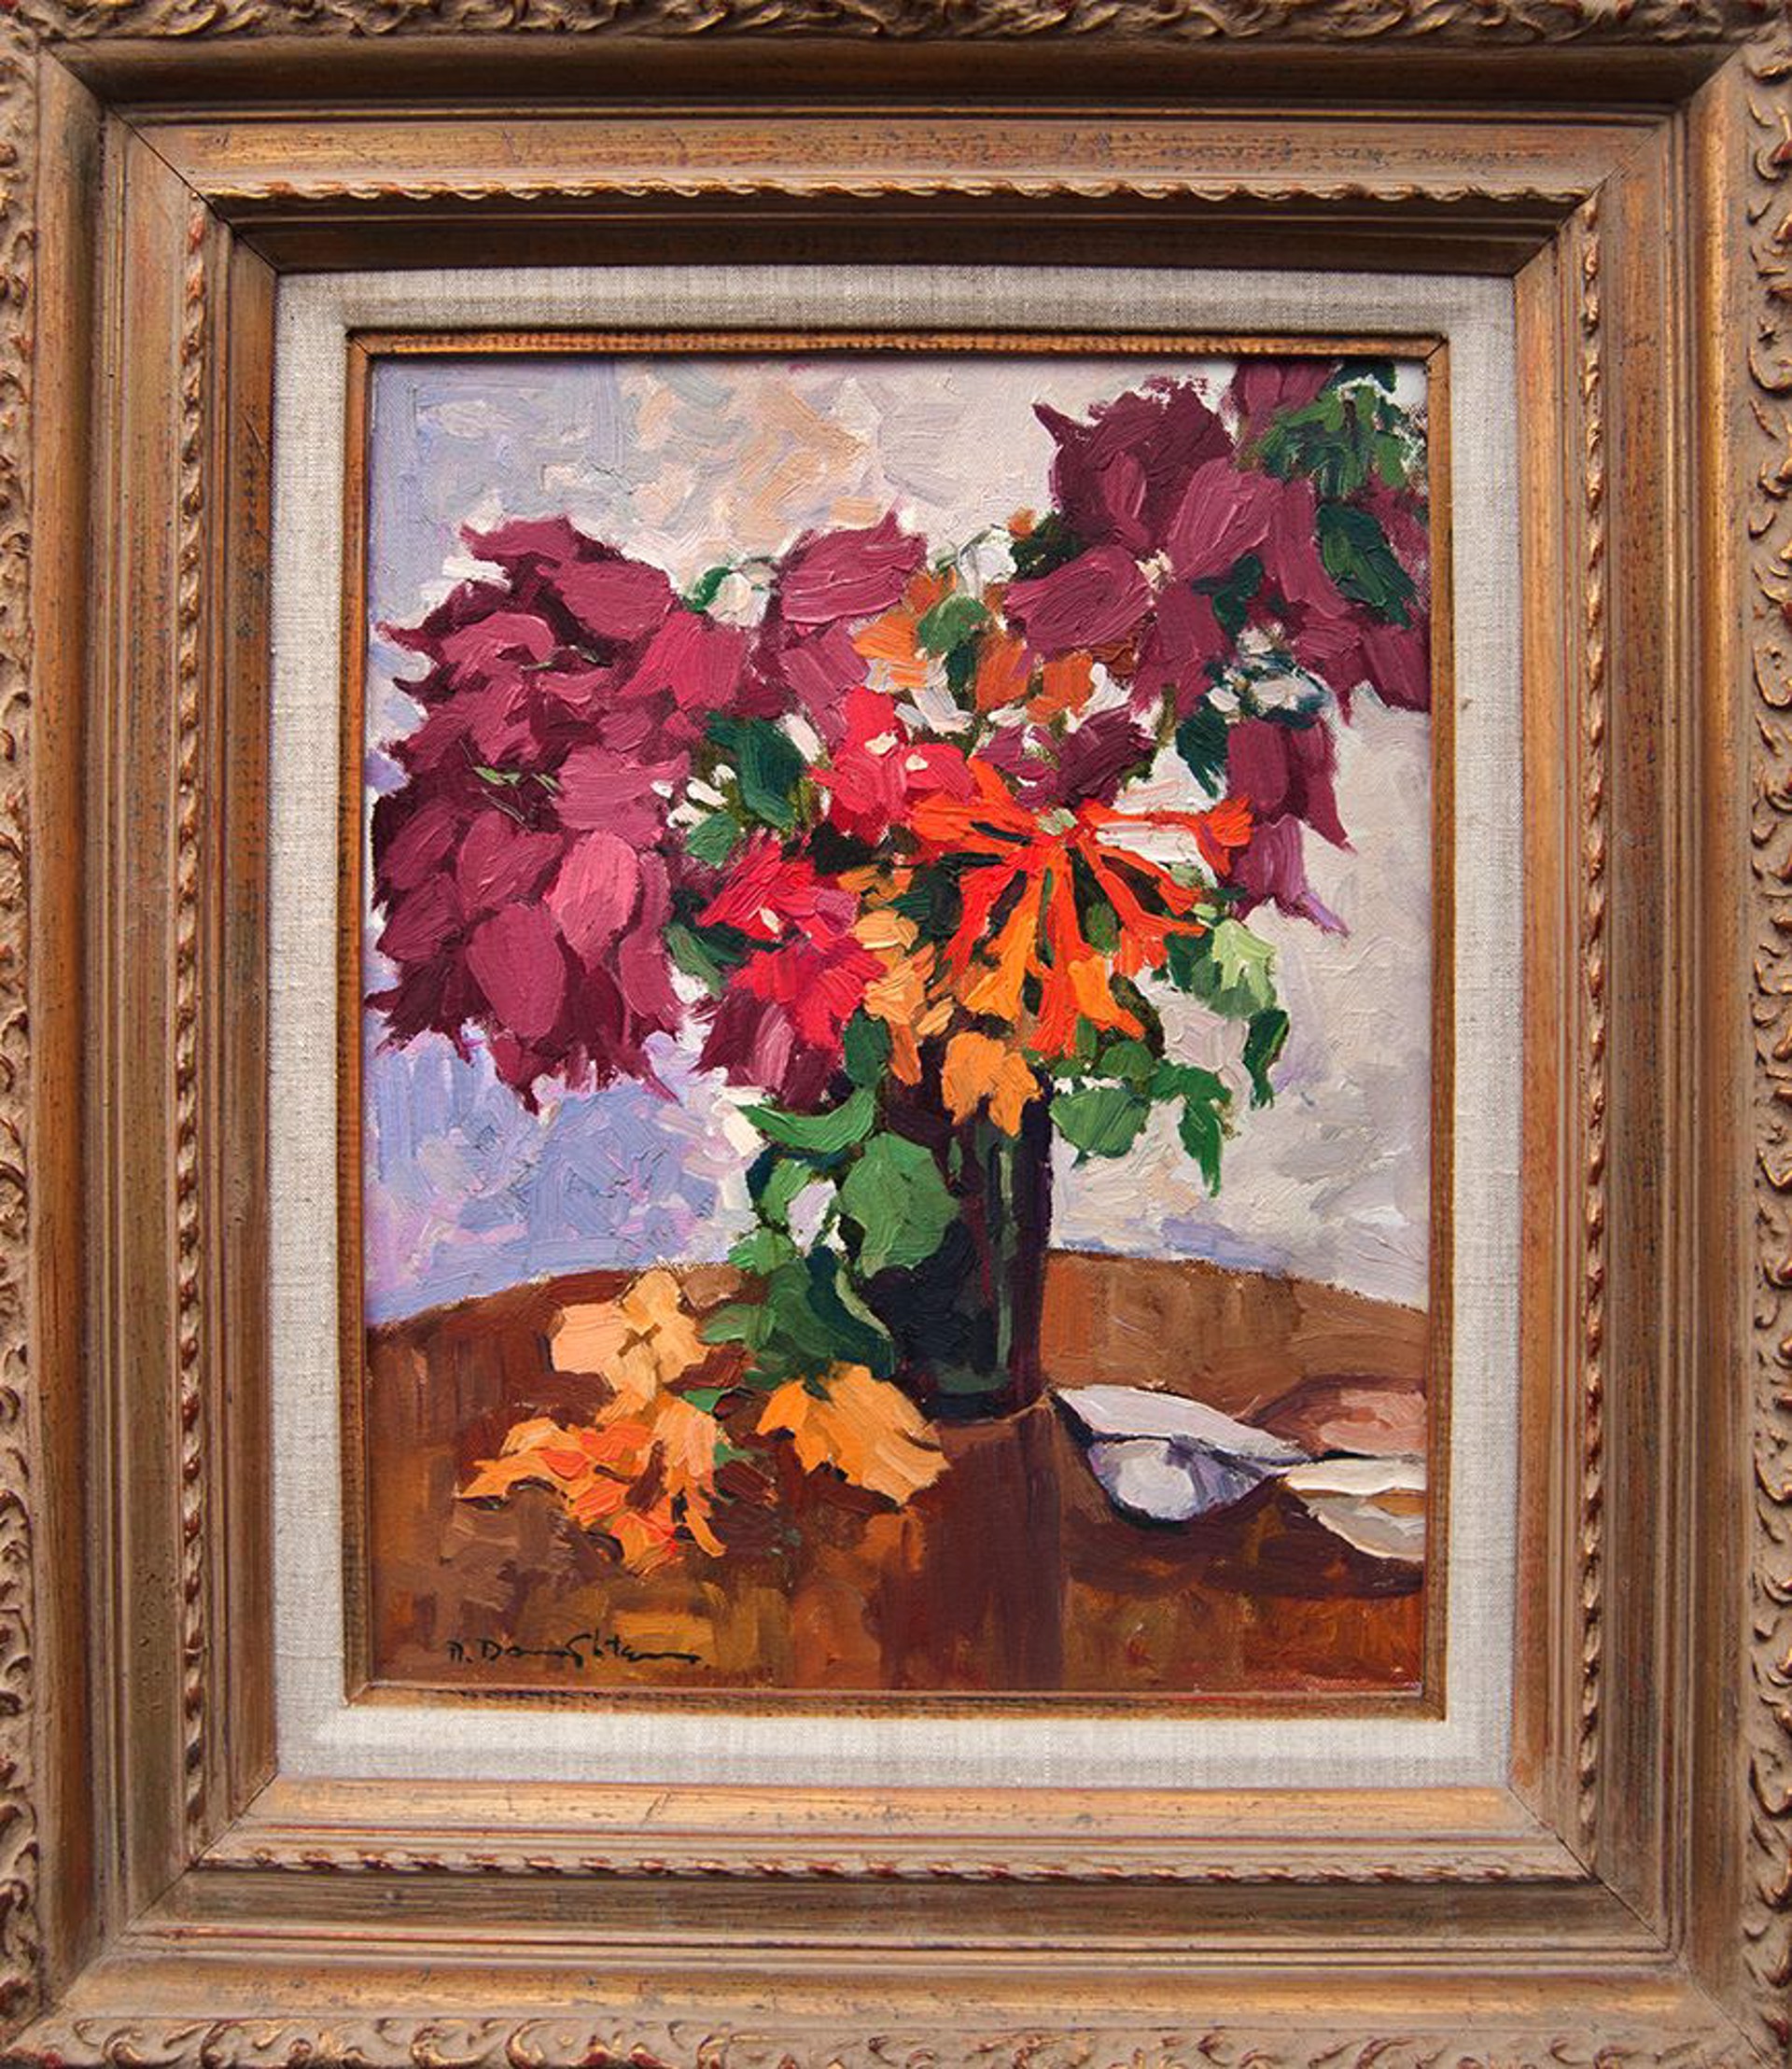 Vase of Flowers by Robert Daughters (1929-2013)